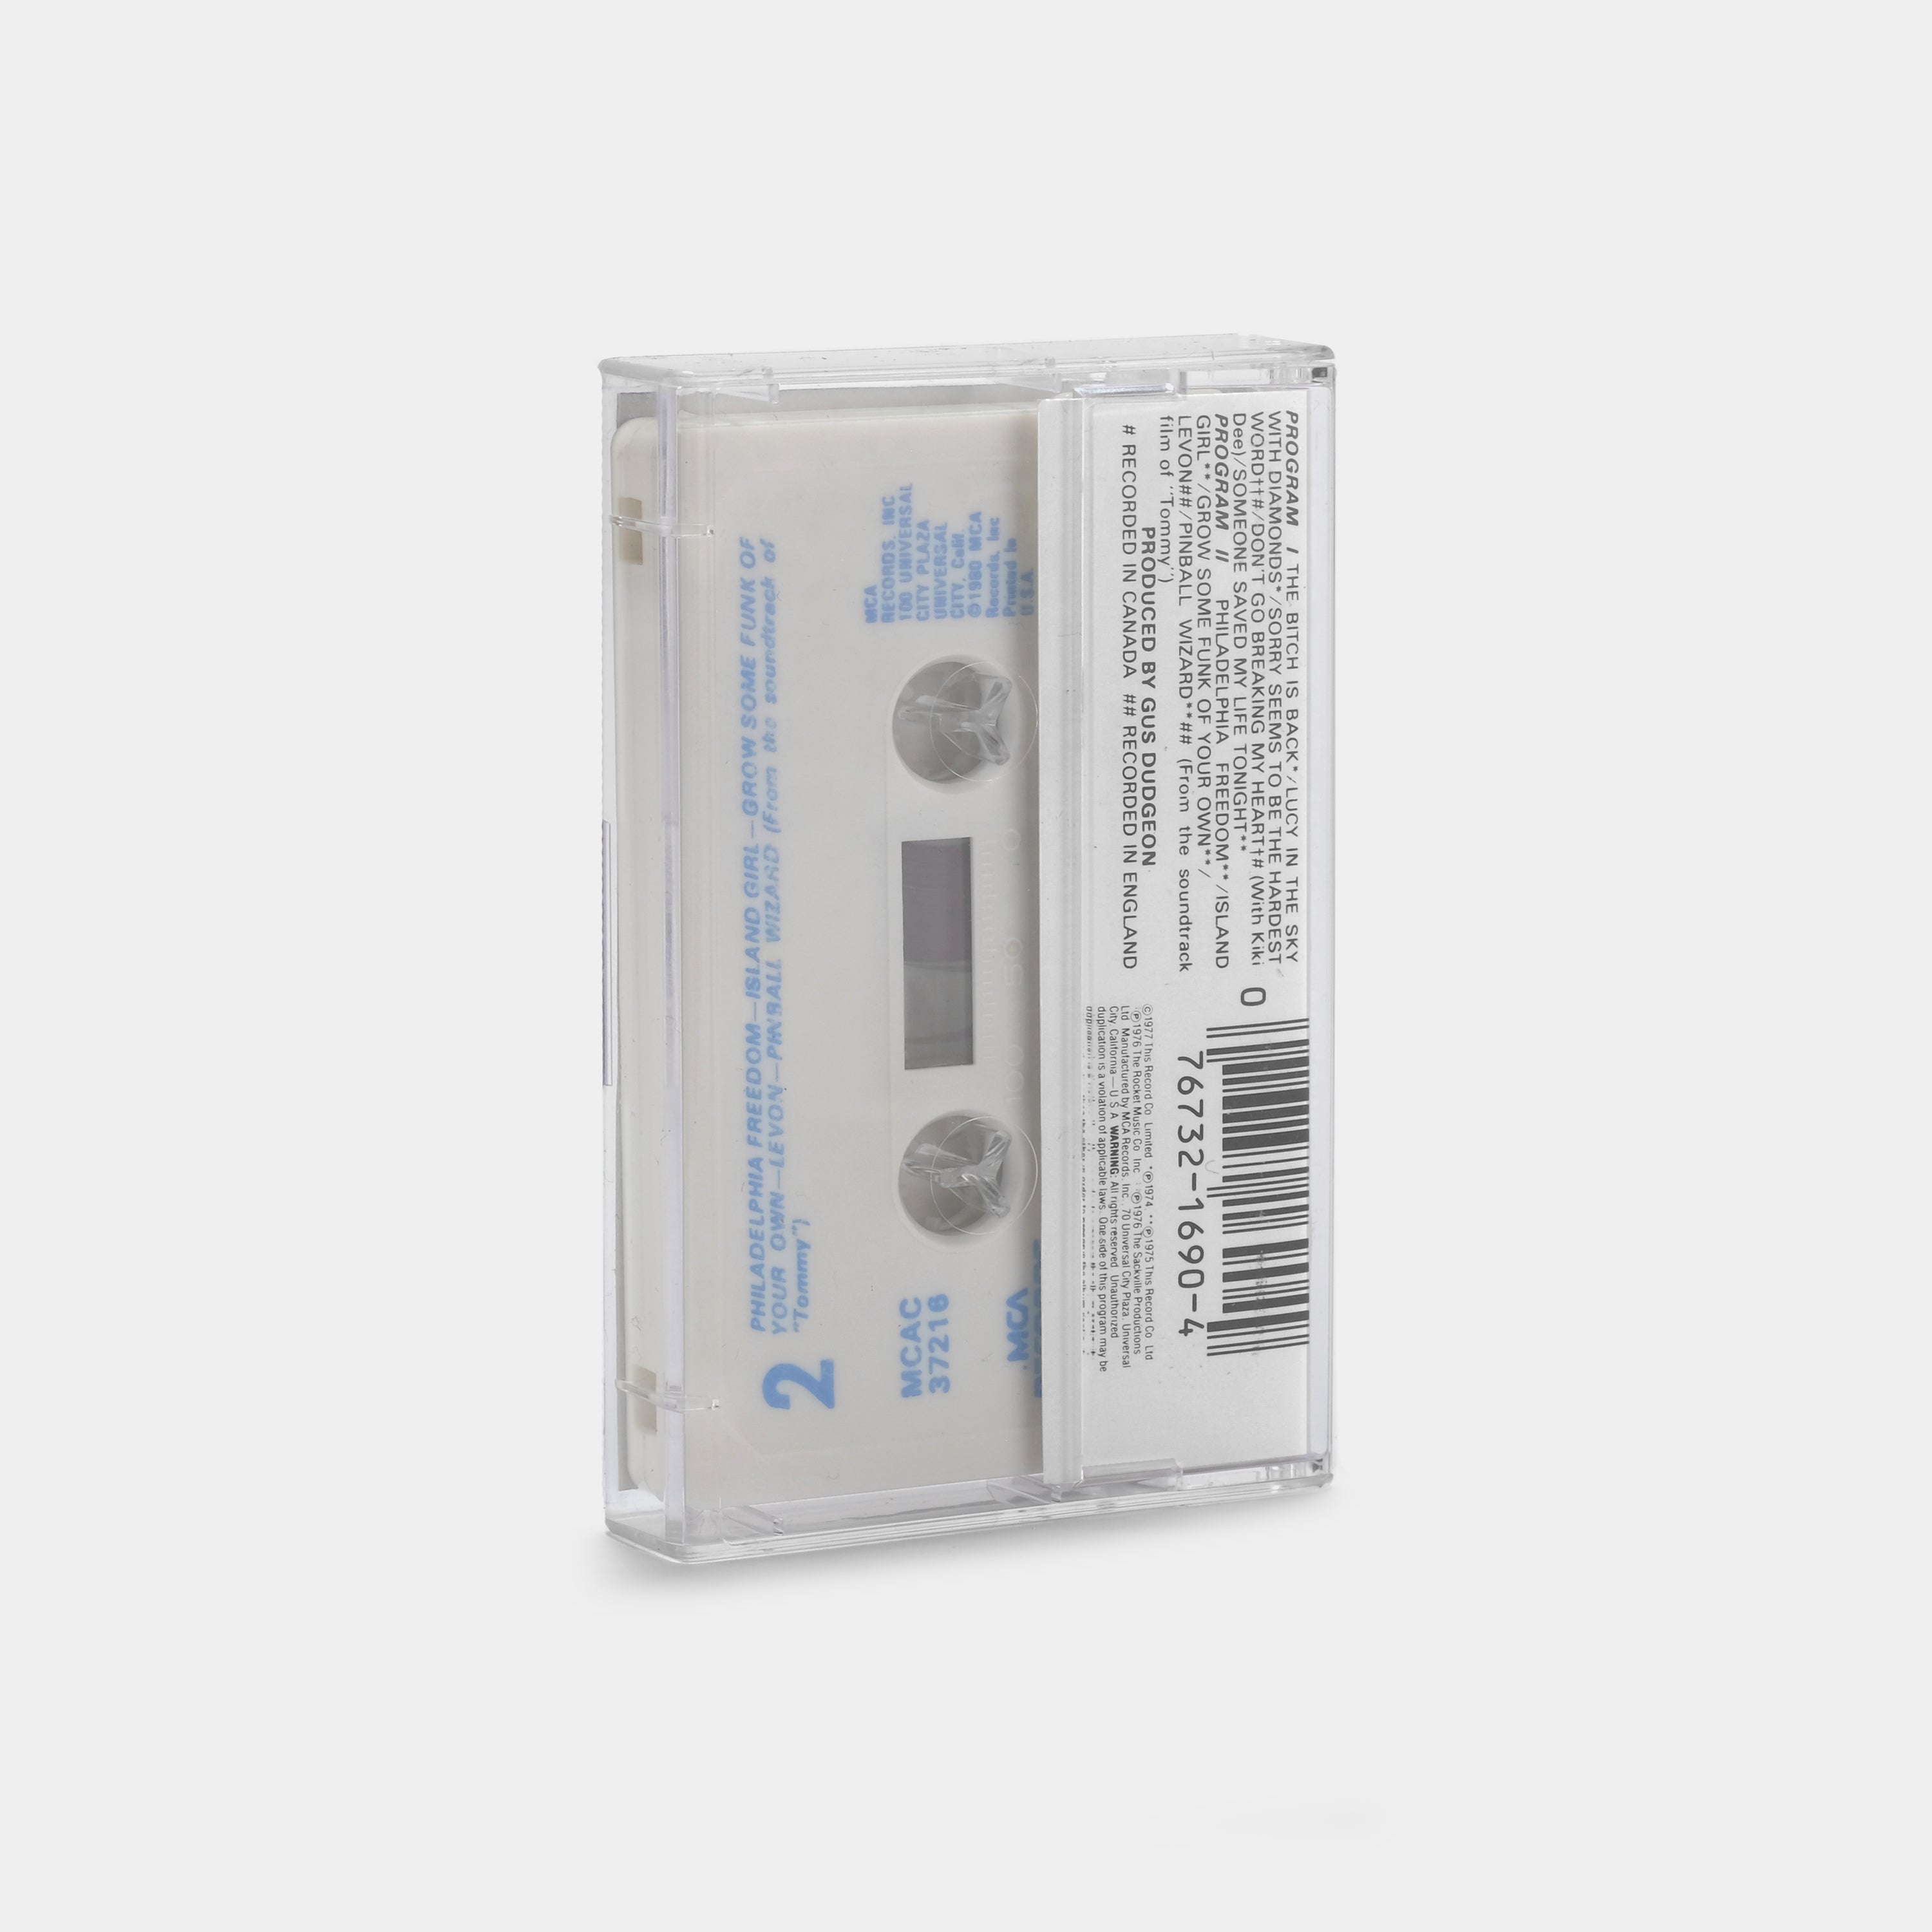 Elton John - Elton John's Greatest Hits Volume II Cassette Tape